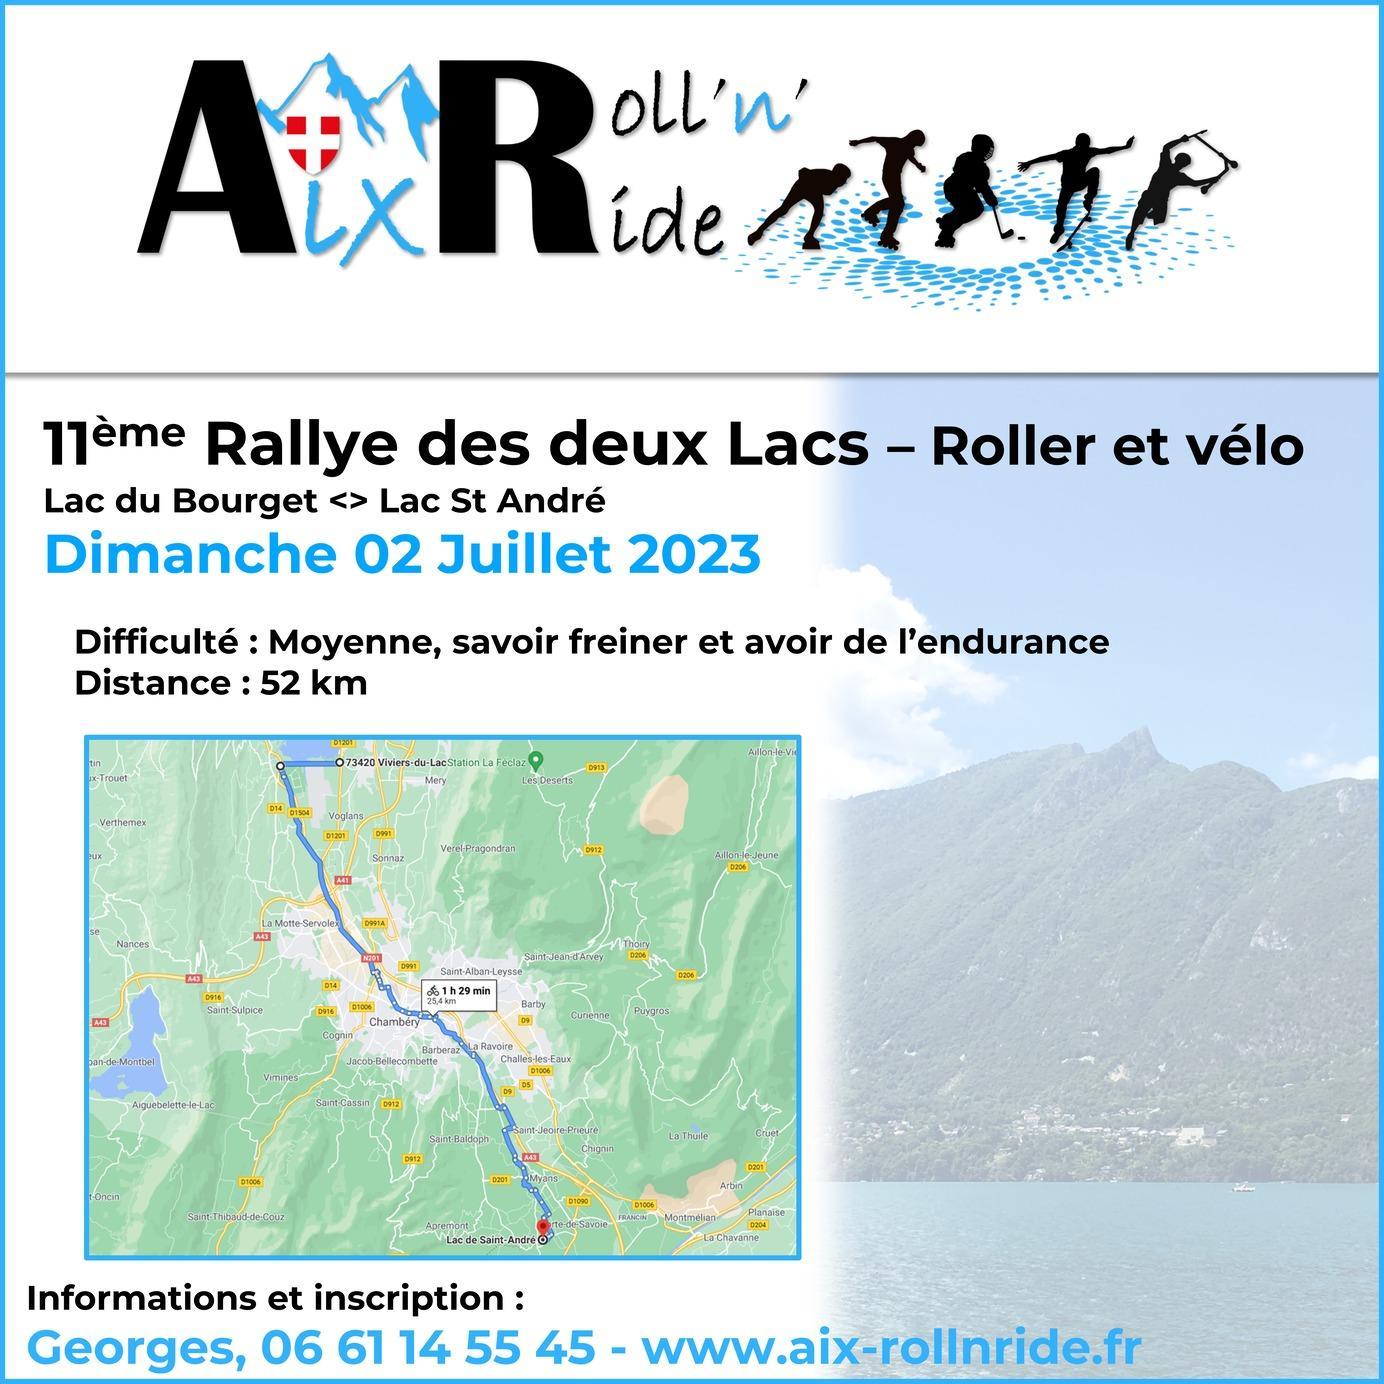 11ème Rallye des deux Lacs - Roller et vélo